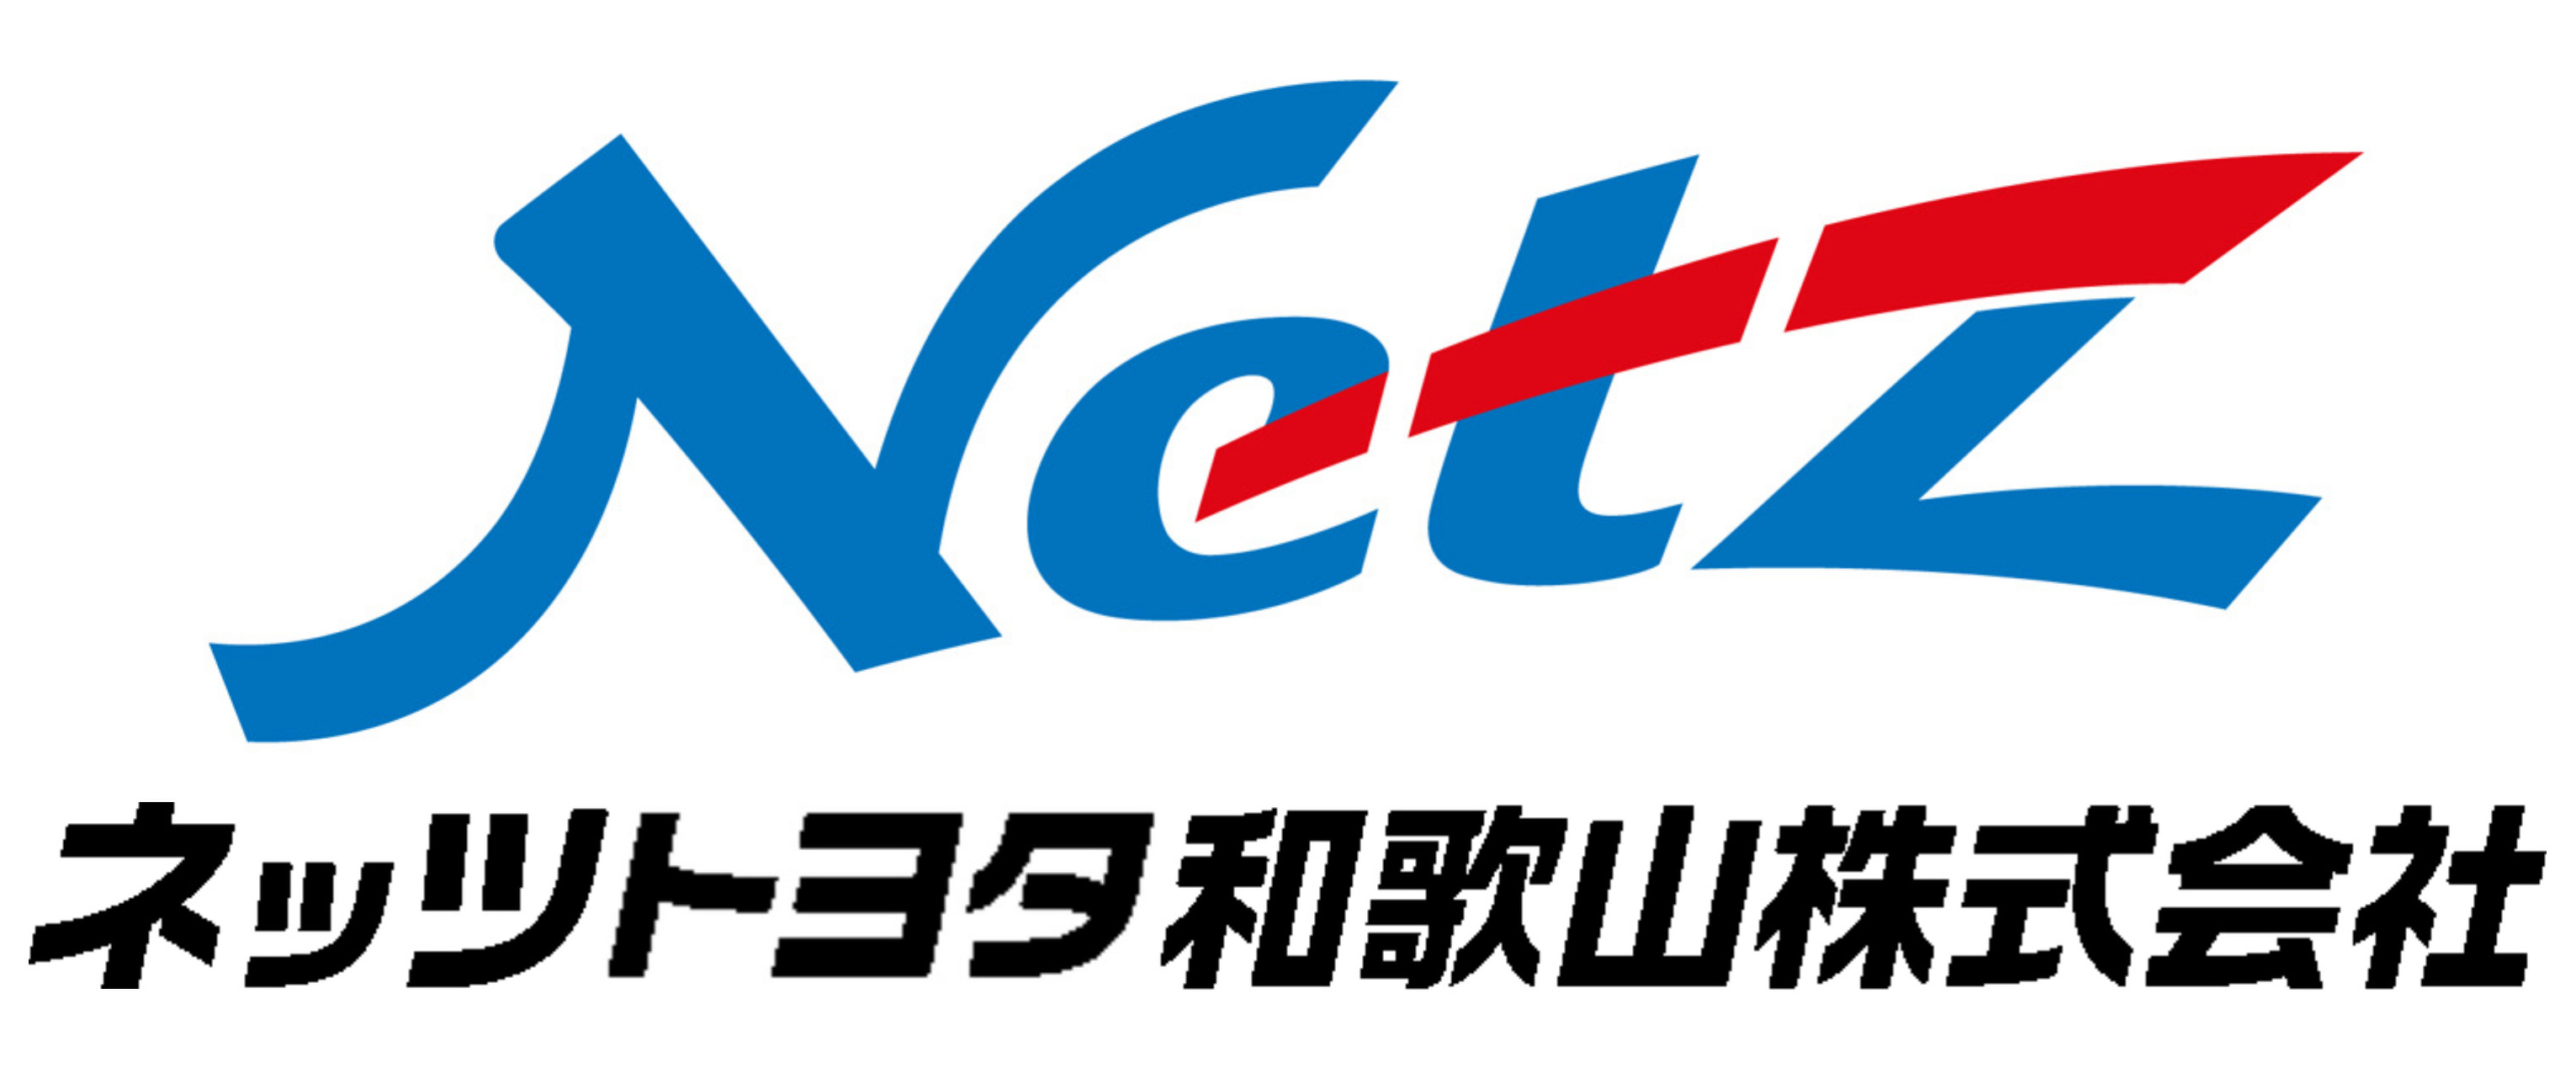 netz_logo2020